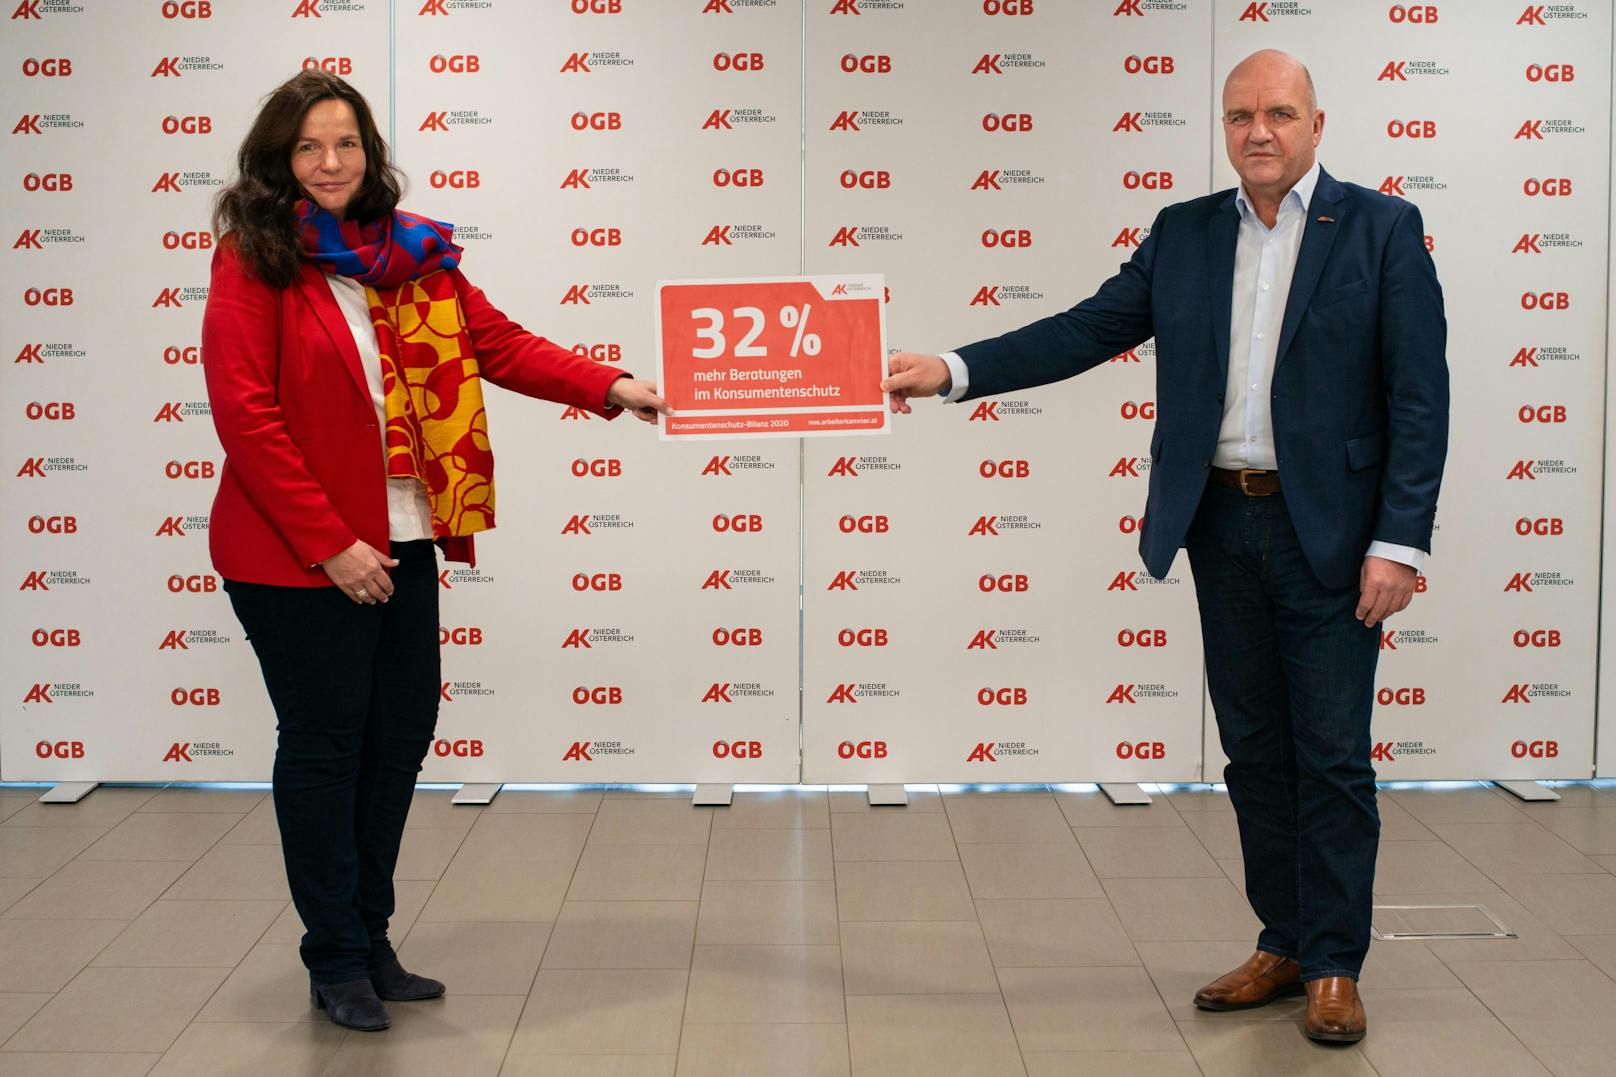 AK Niederösterreich-Präsident und ÖGB NÖ-Vorsitzender Markus Wieser und AK Niederösterreich-Direktorin Mag. Bettina Heise präsentierten die Bilanz der Konsumentenberatung im Corona-Jahr 2020.